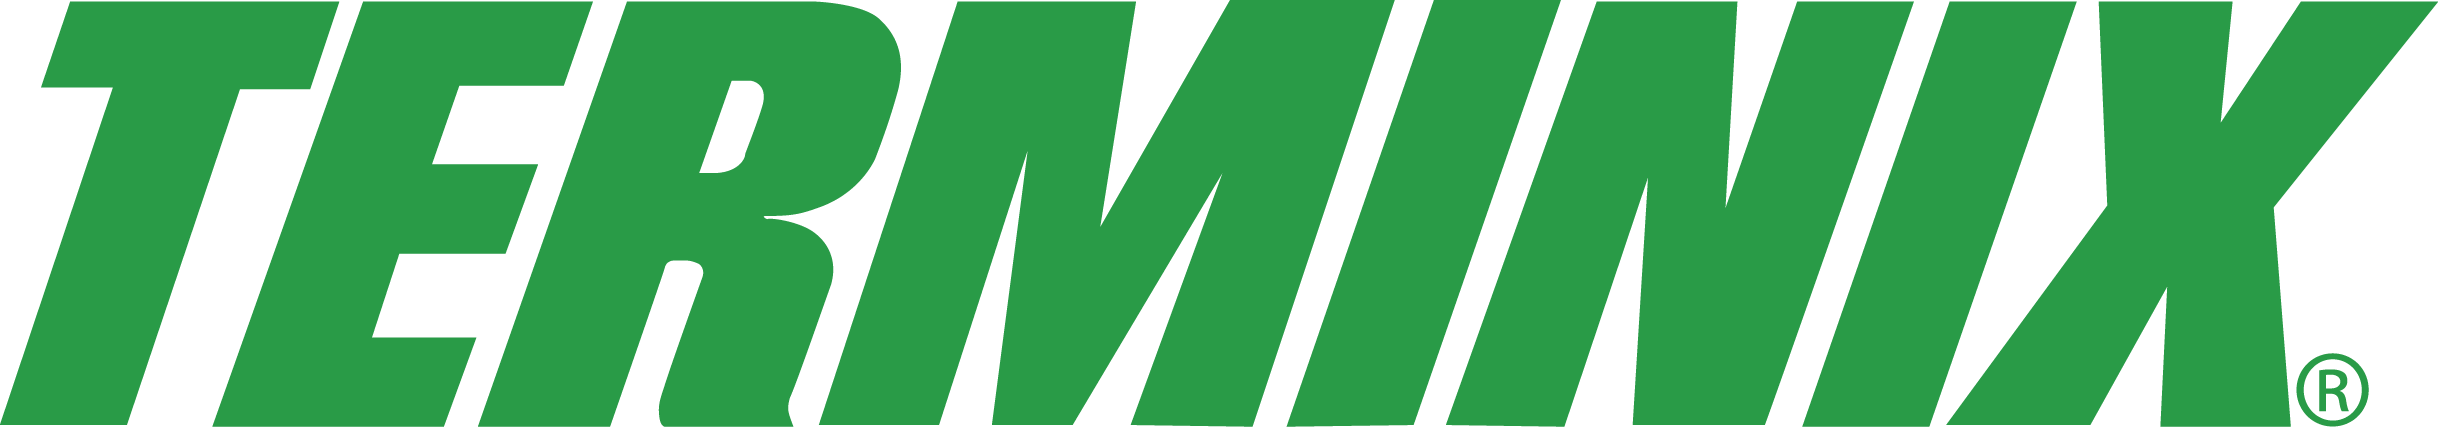 ServiceMaster Logo - Logos | ServiceMaster Online Newsroom